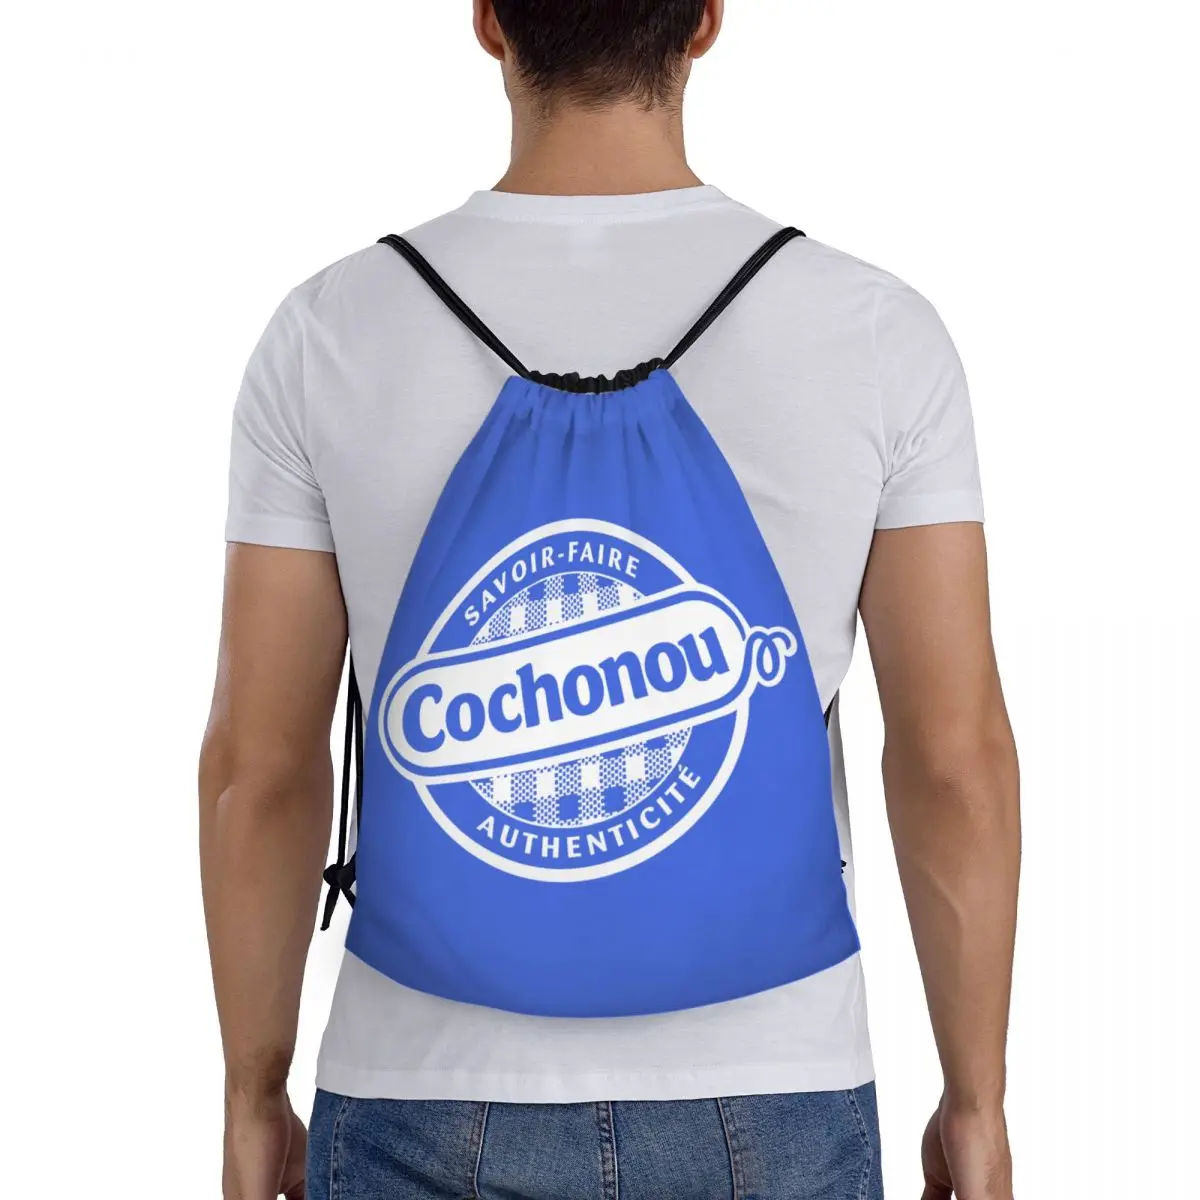 Cichionou-女性と男性のための引きひも付きバックパック、ジムとショッピングのためのスポーツバッグ